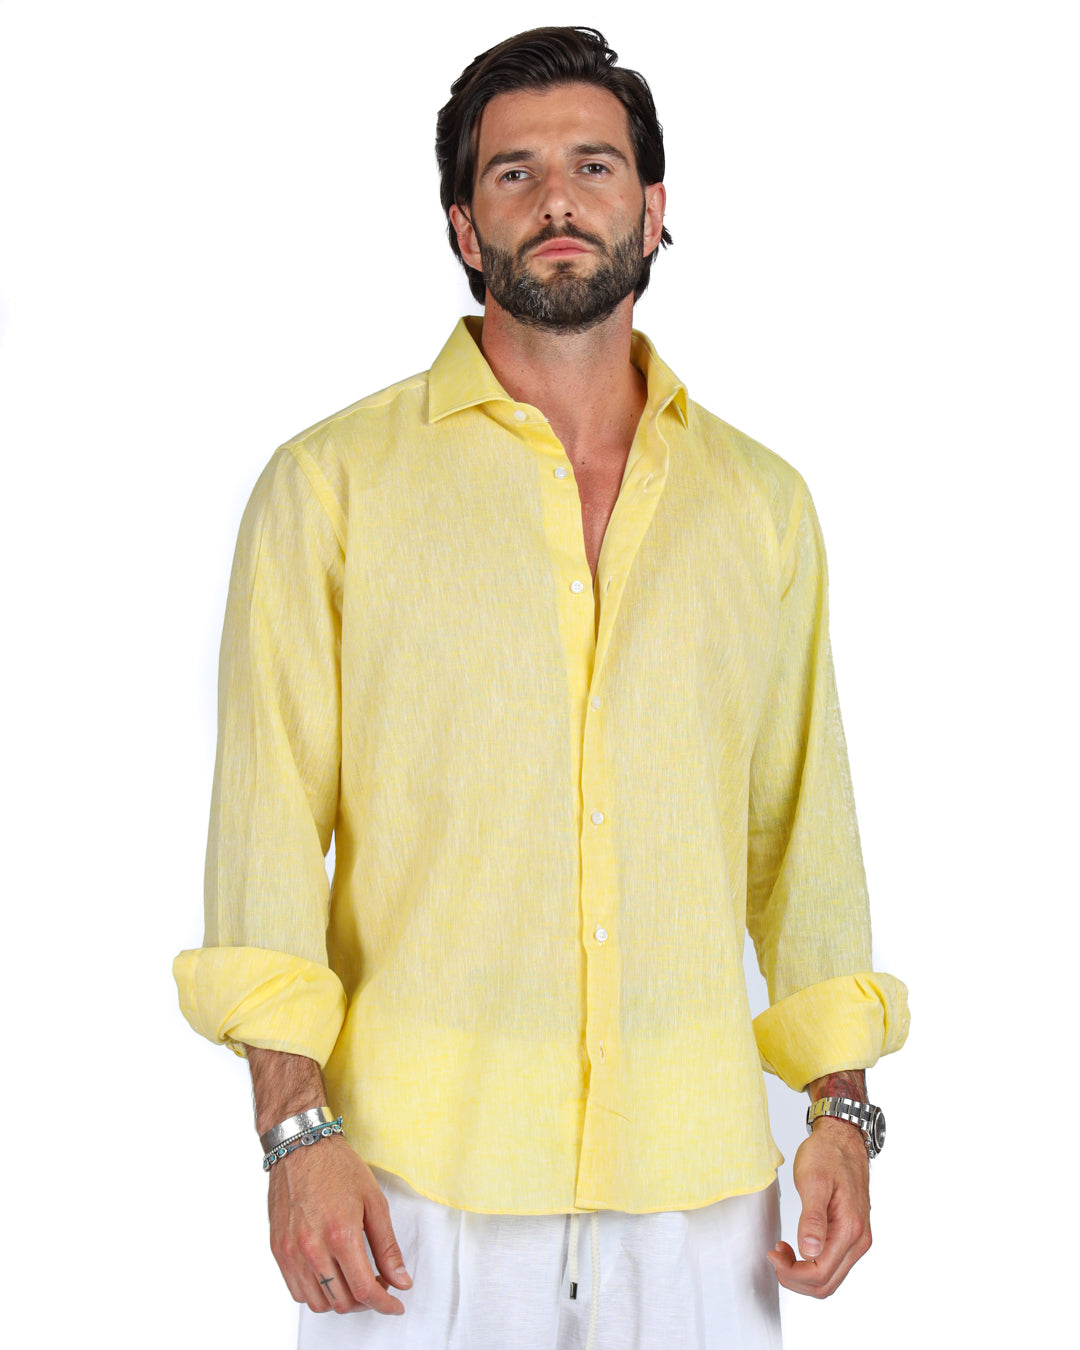 Praiano - Camicia classica gialla in lino